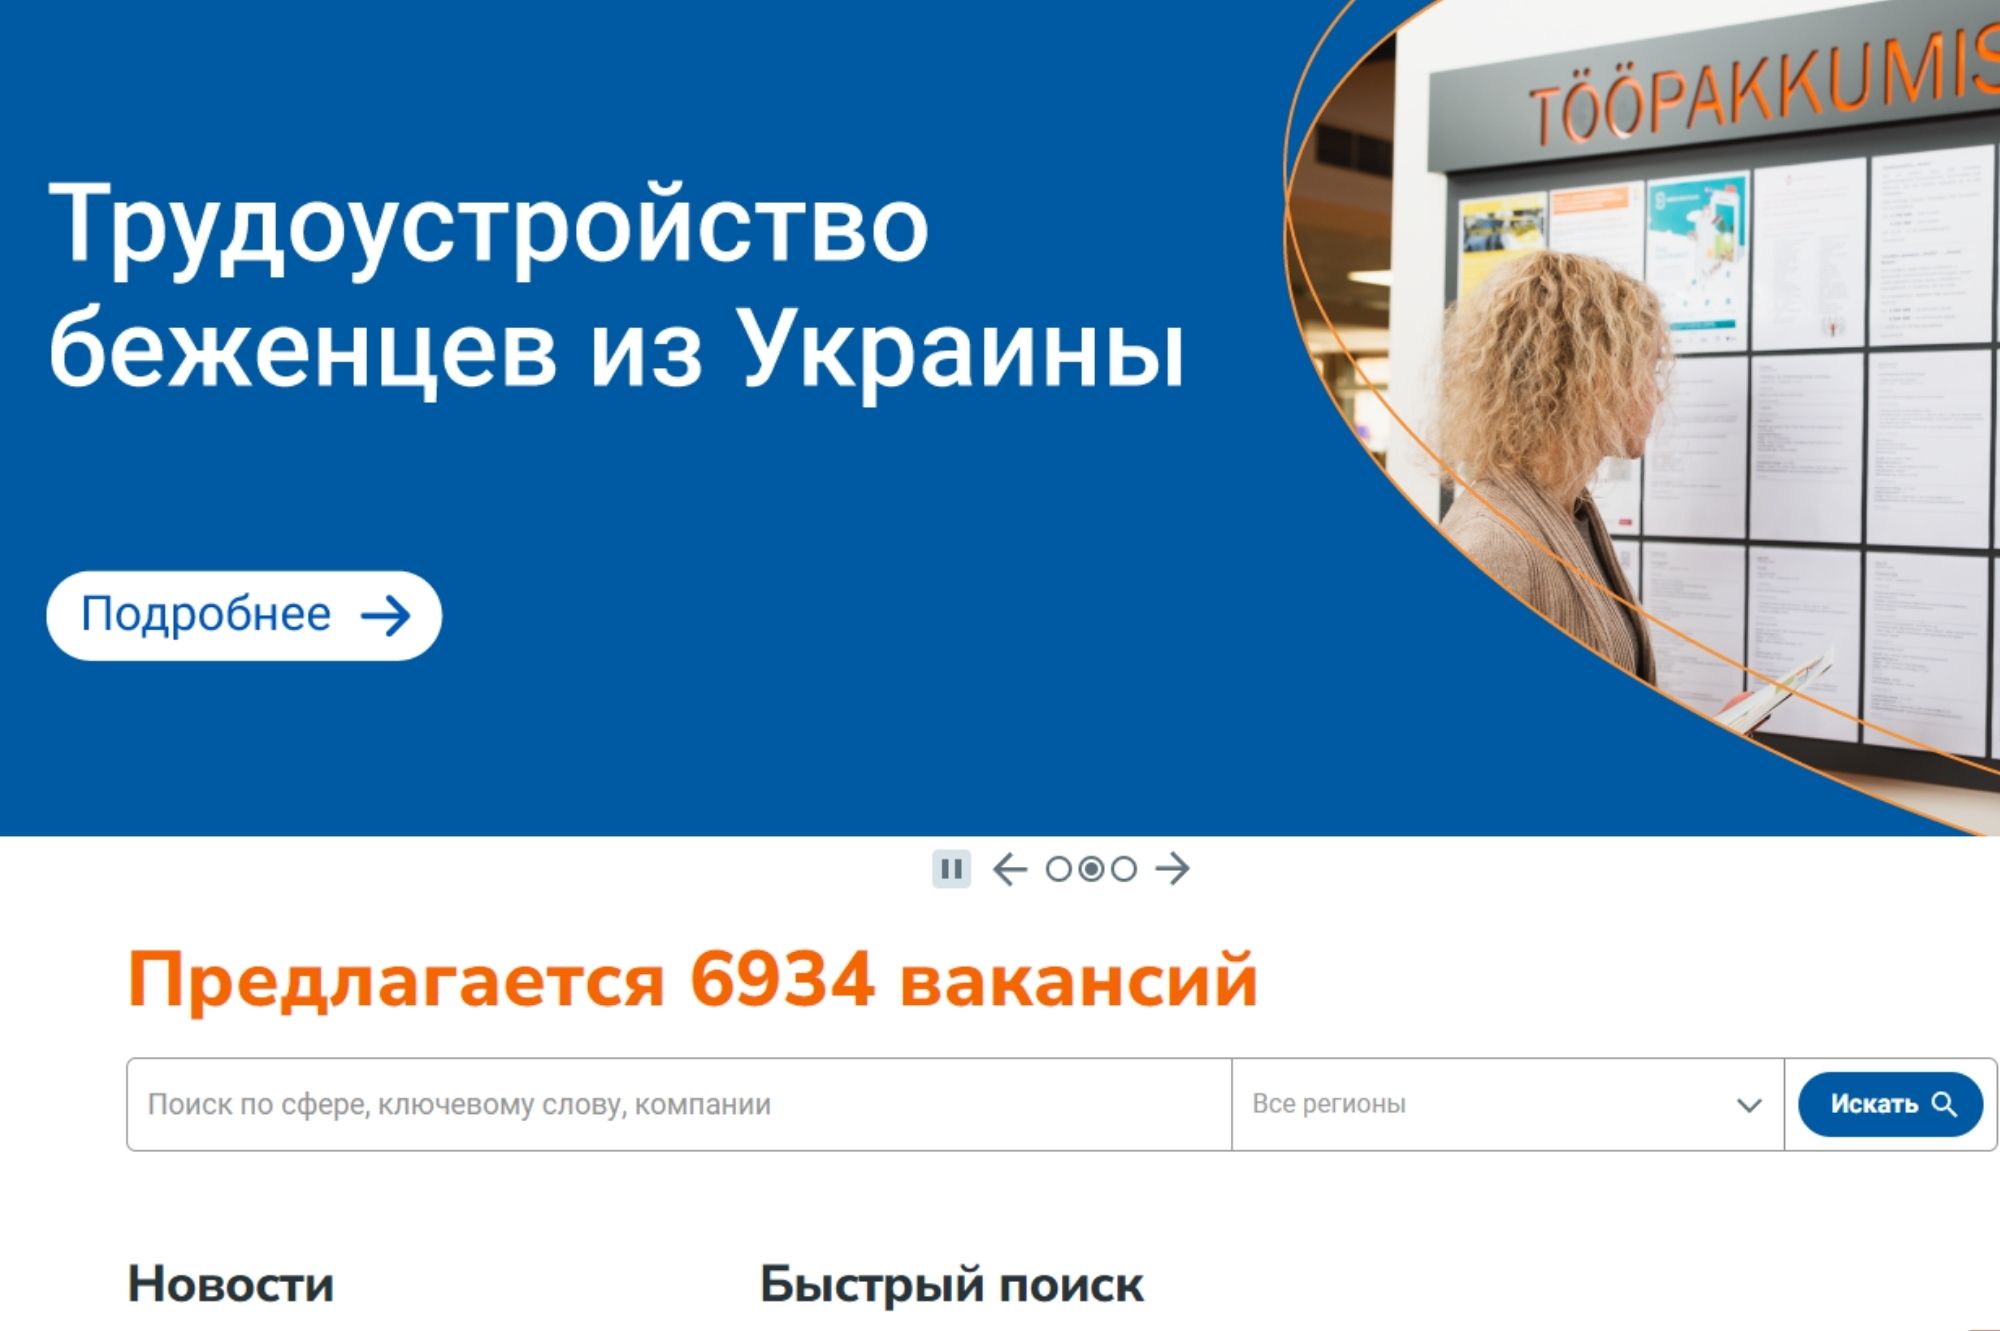 В качестве безработных зарегистрированы 695 украинских беженцев. Источник фото: скриншот с сайта tootukassa.ee.